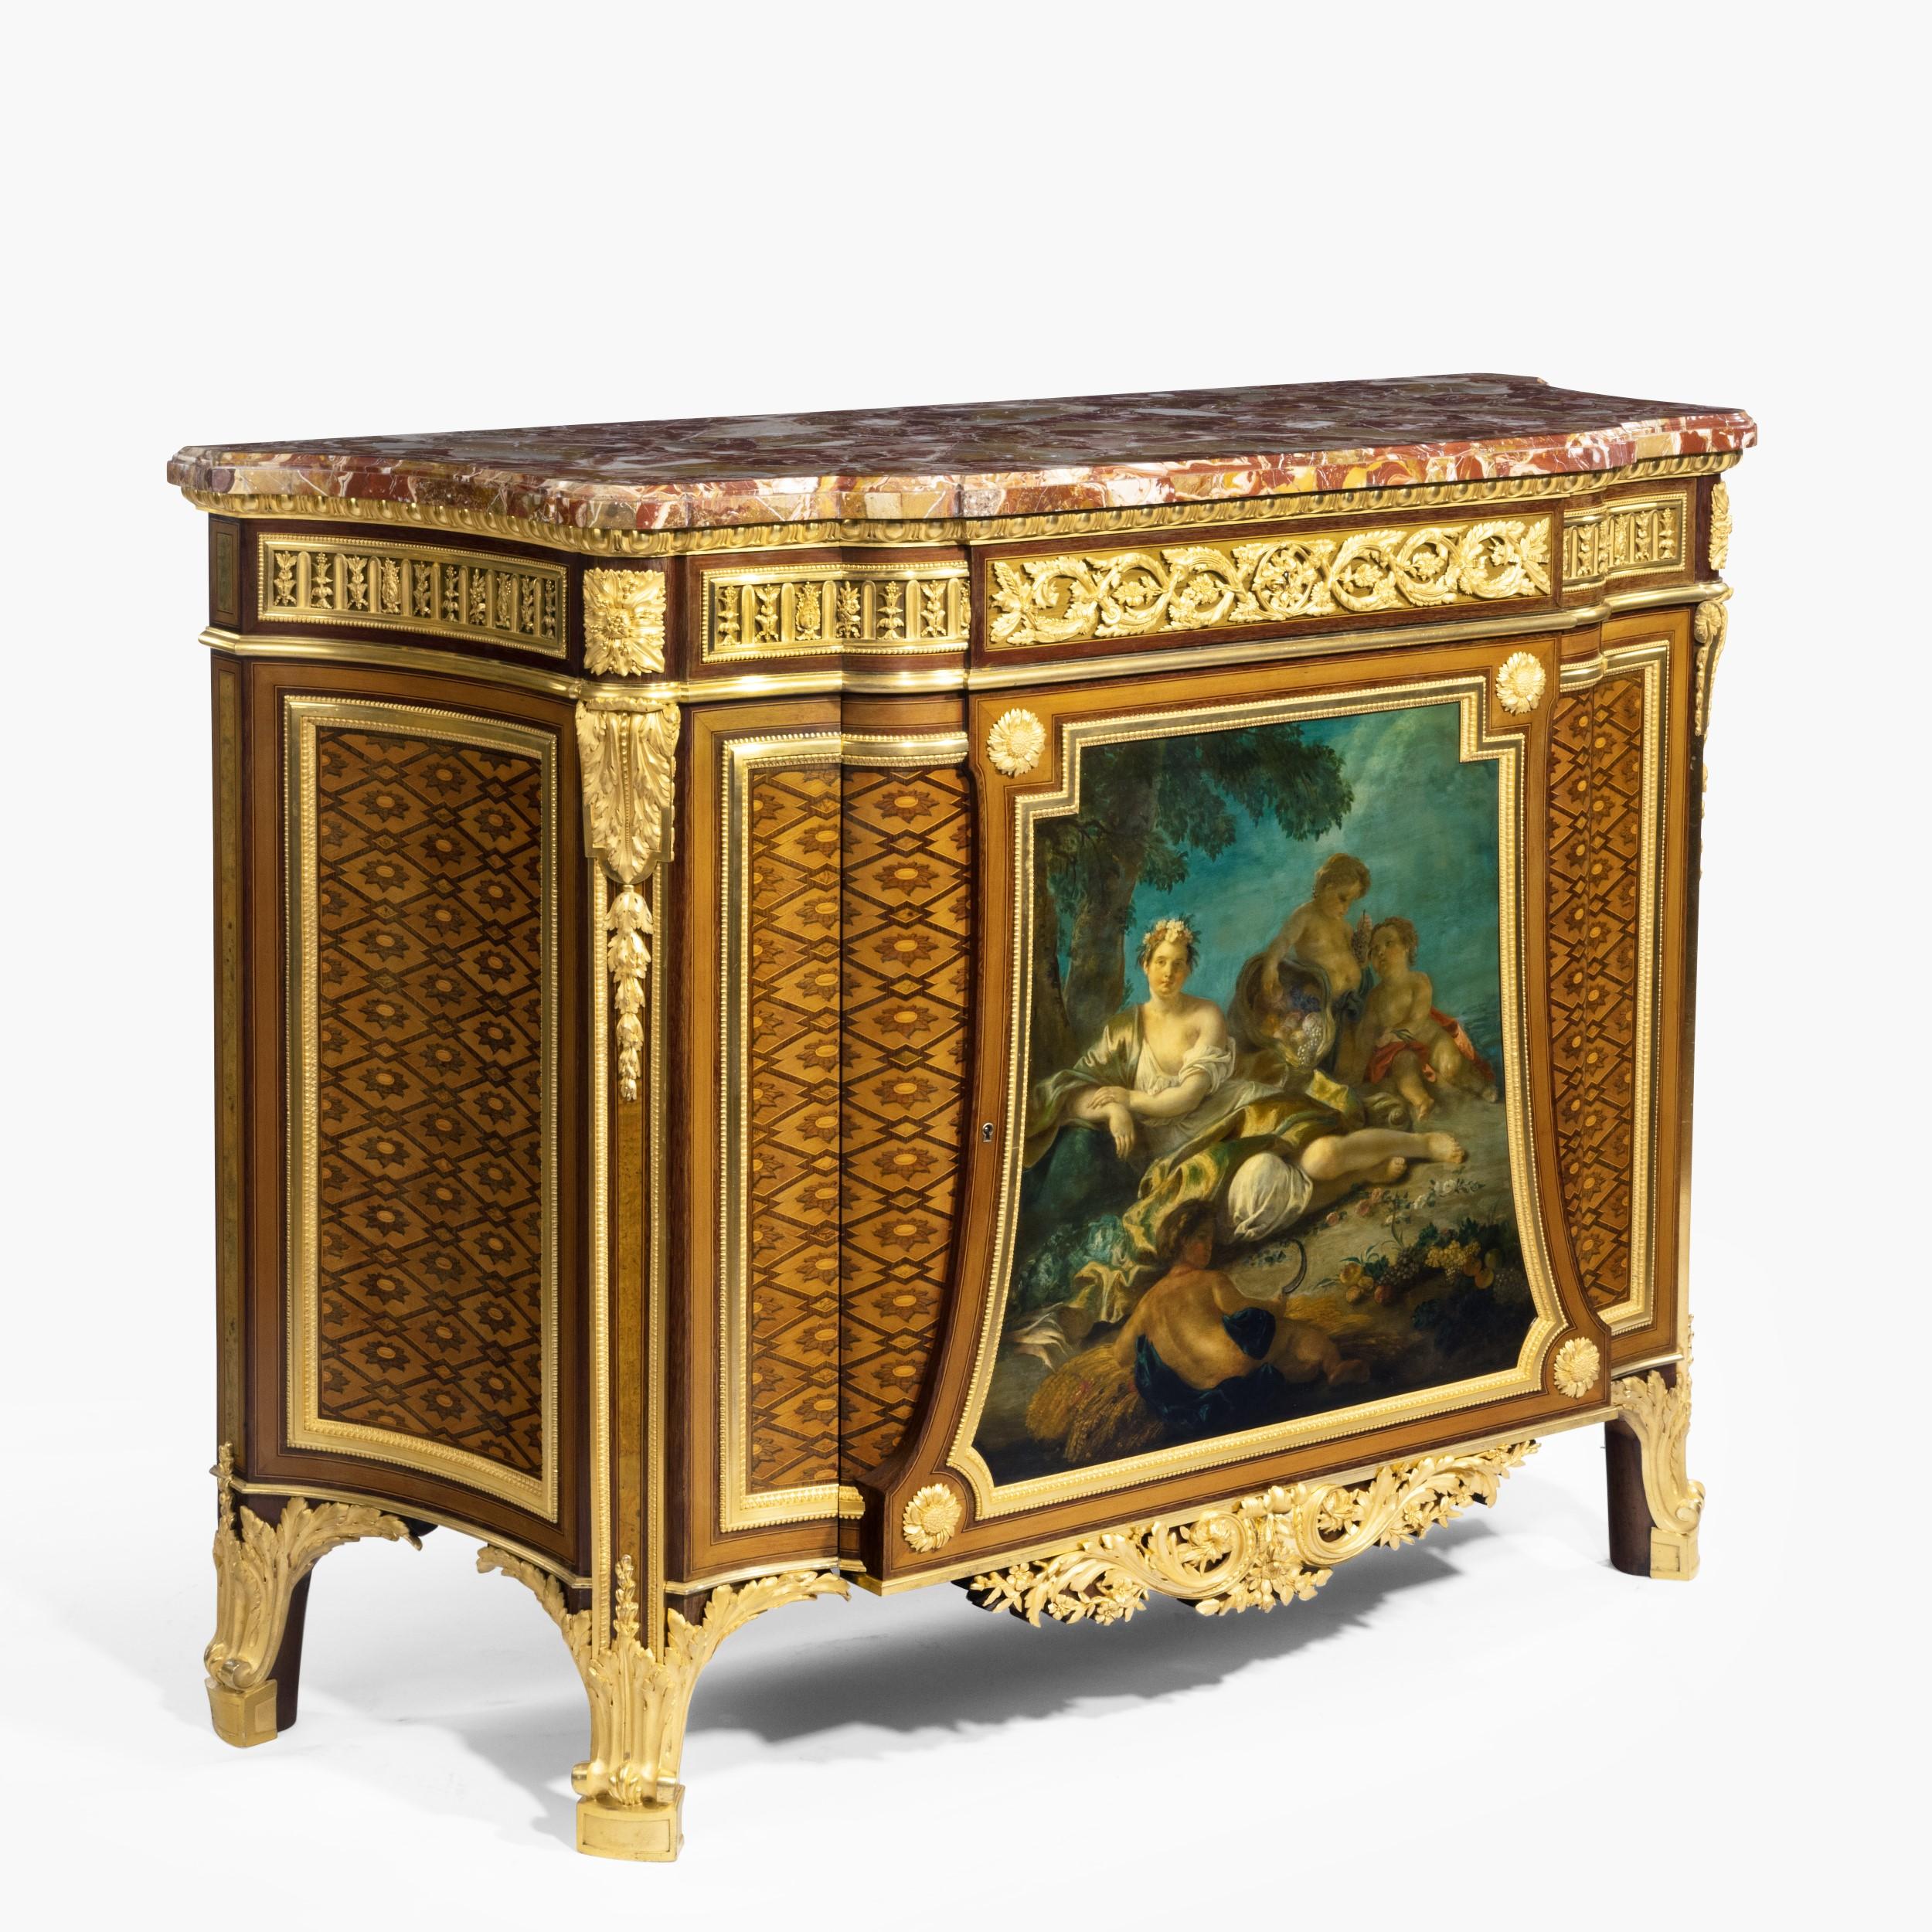 Eine sehr schöne Kommode im Louis XVI-Stil mit Intarsien aus vergoldeter Bronze
Von Henry Dasson

Nach einem Modell von Jean-Henri Riesener, das Marie-Antoinette für Versailles geliefert wurde. Hergestellt aus fein patiniertem Hasenholz, mit